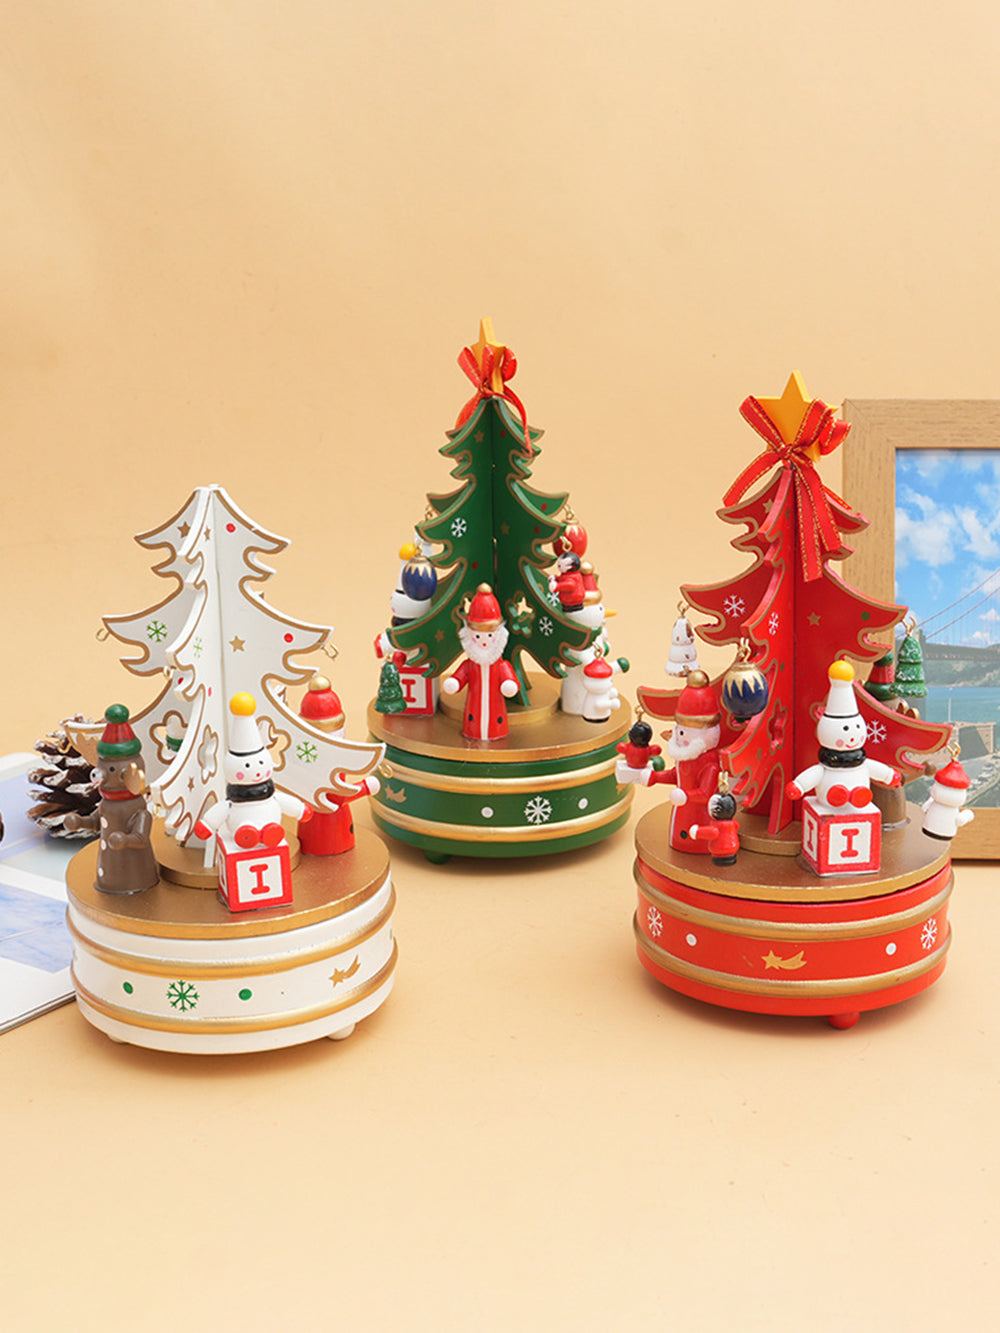 زخرفة صندوق الموسيقى الدائري لشجرة عيد الميلاد